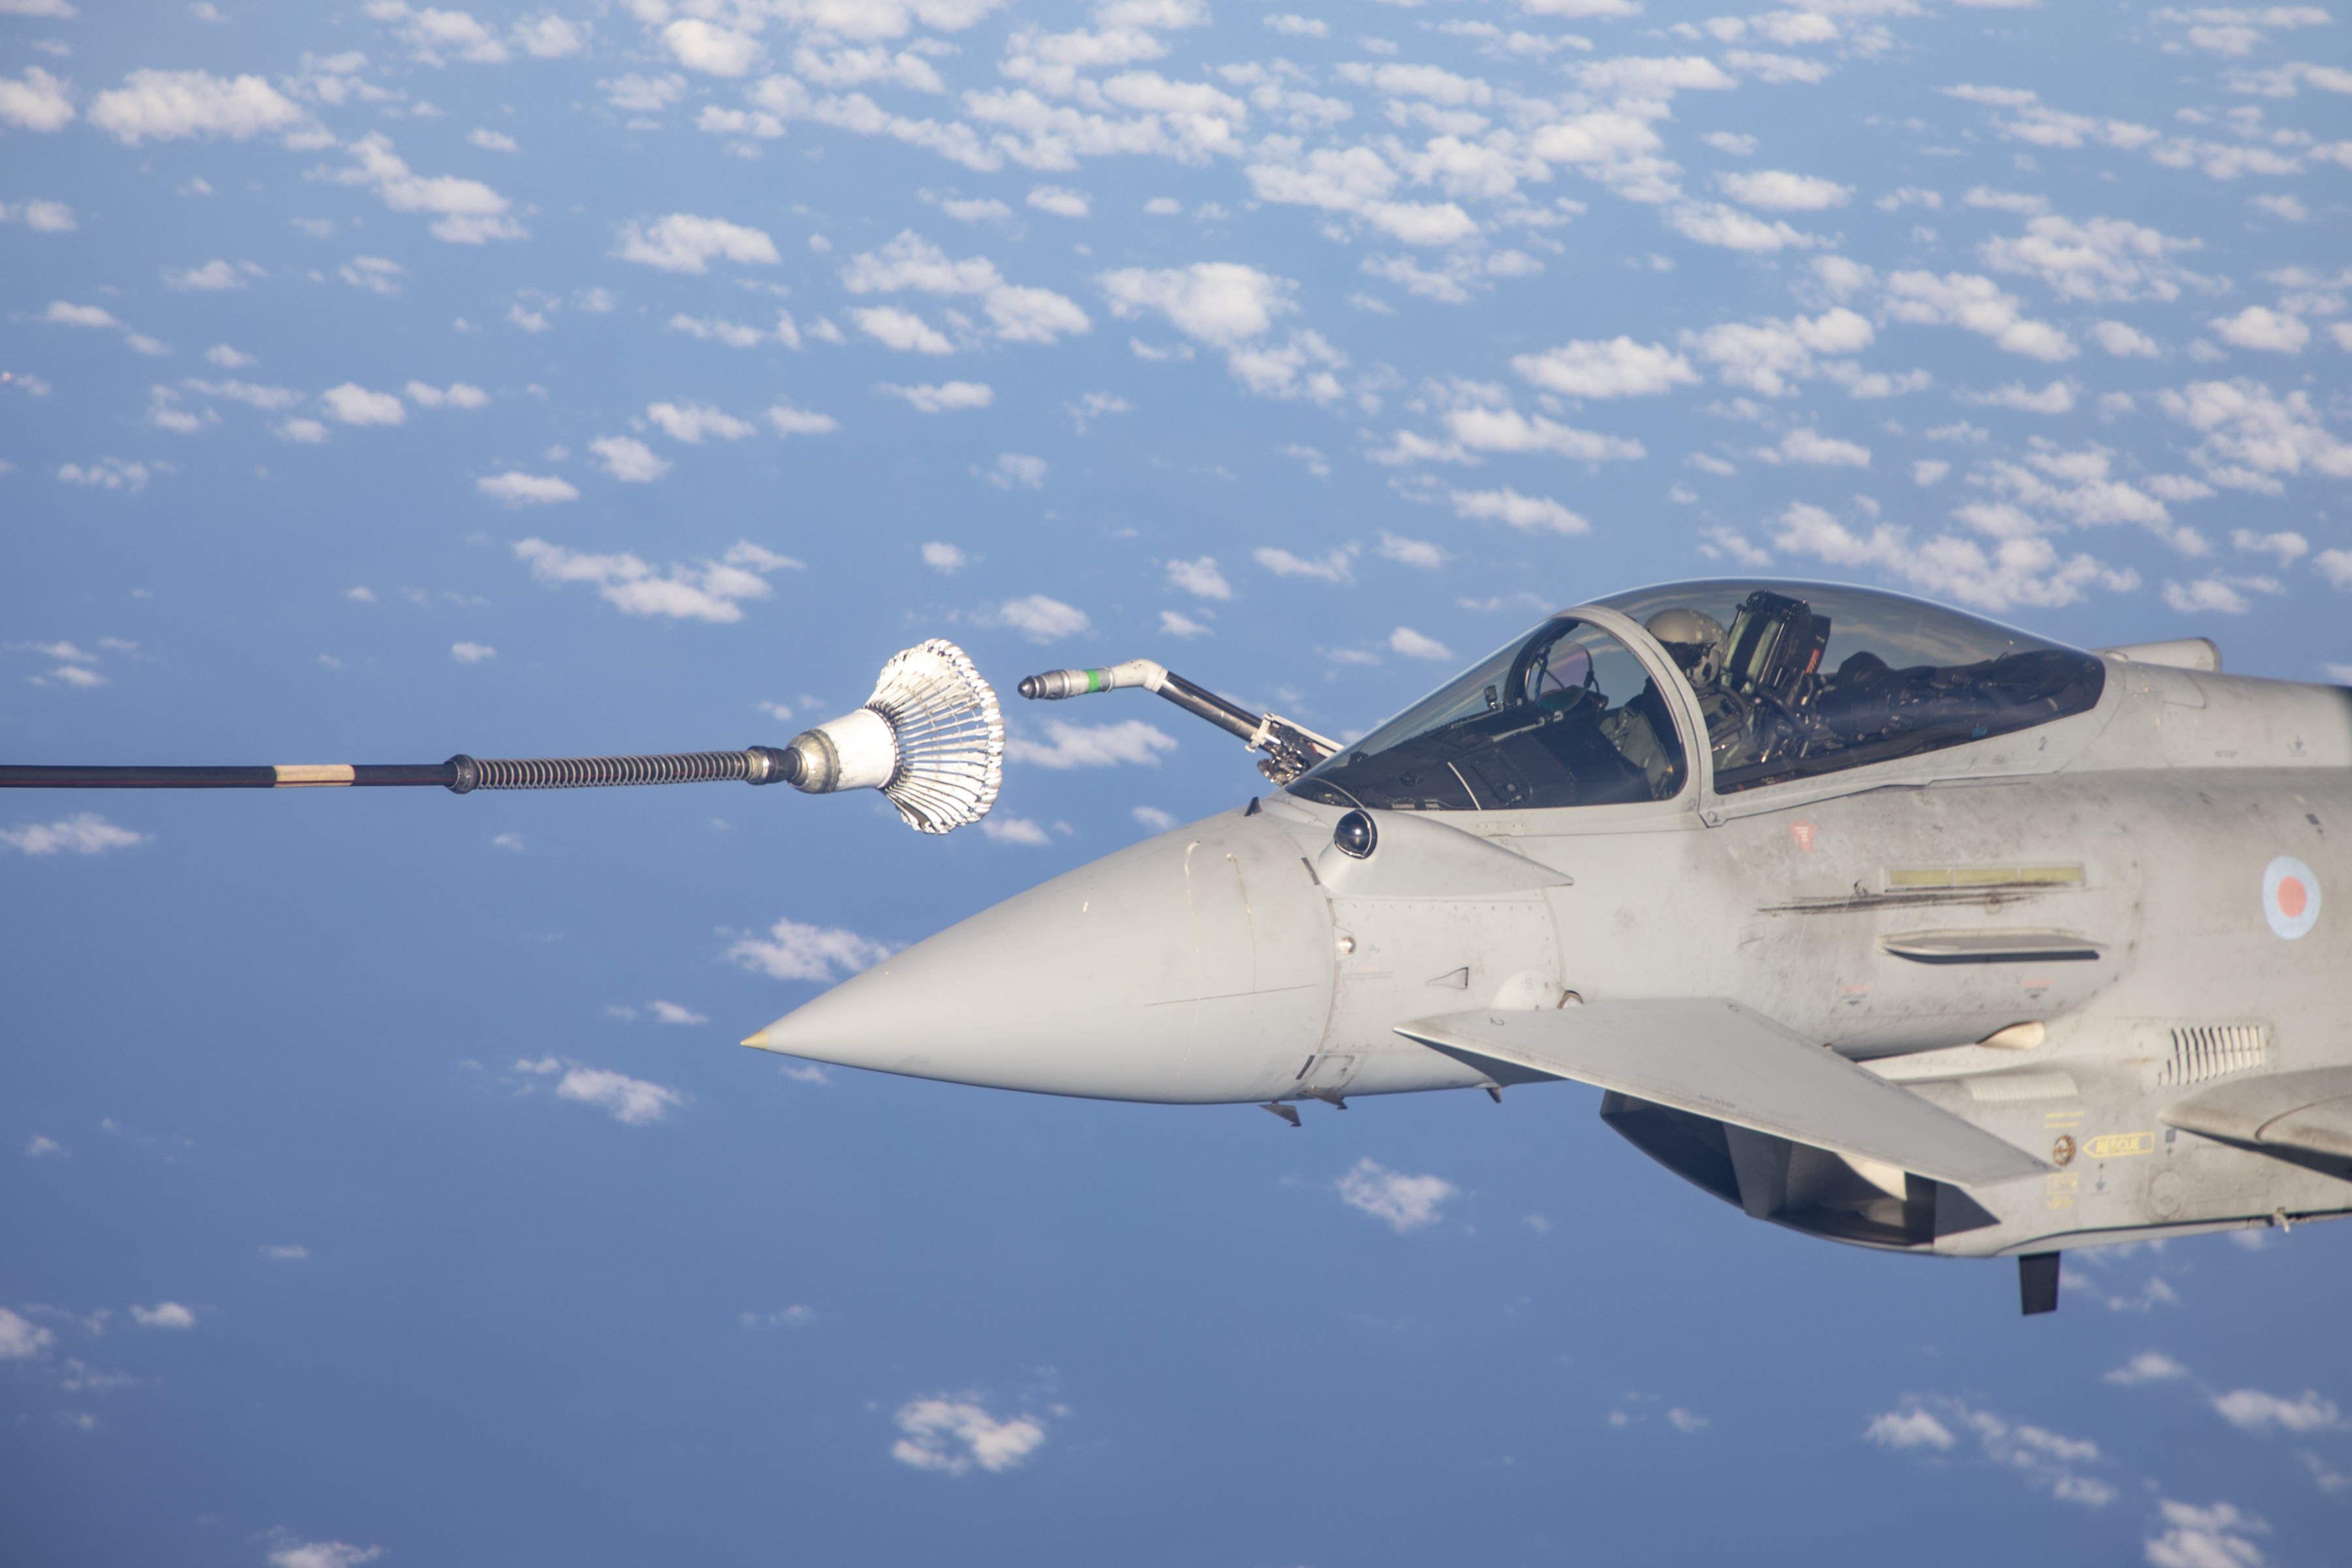 RAF Typhoon receiving air-to-air refueling probe